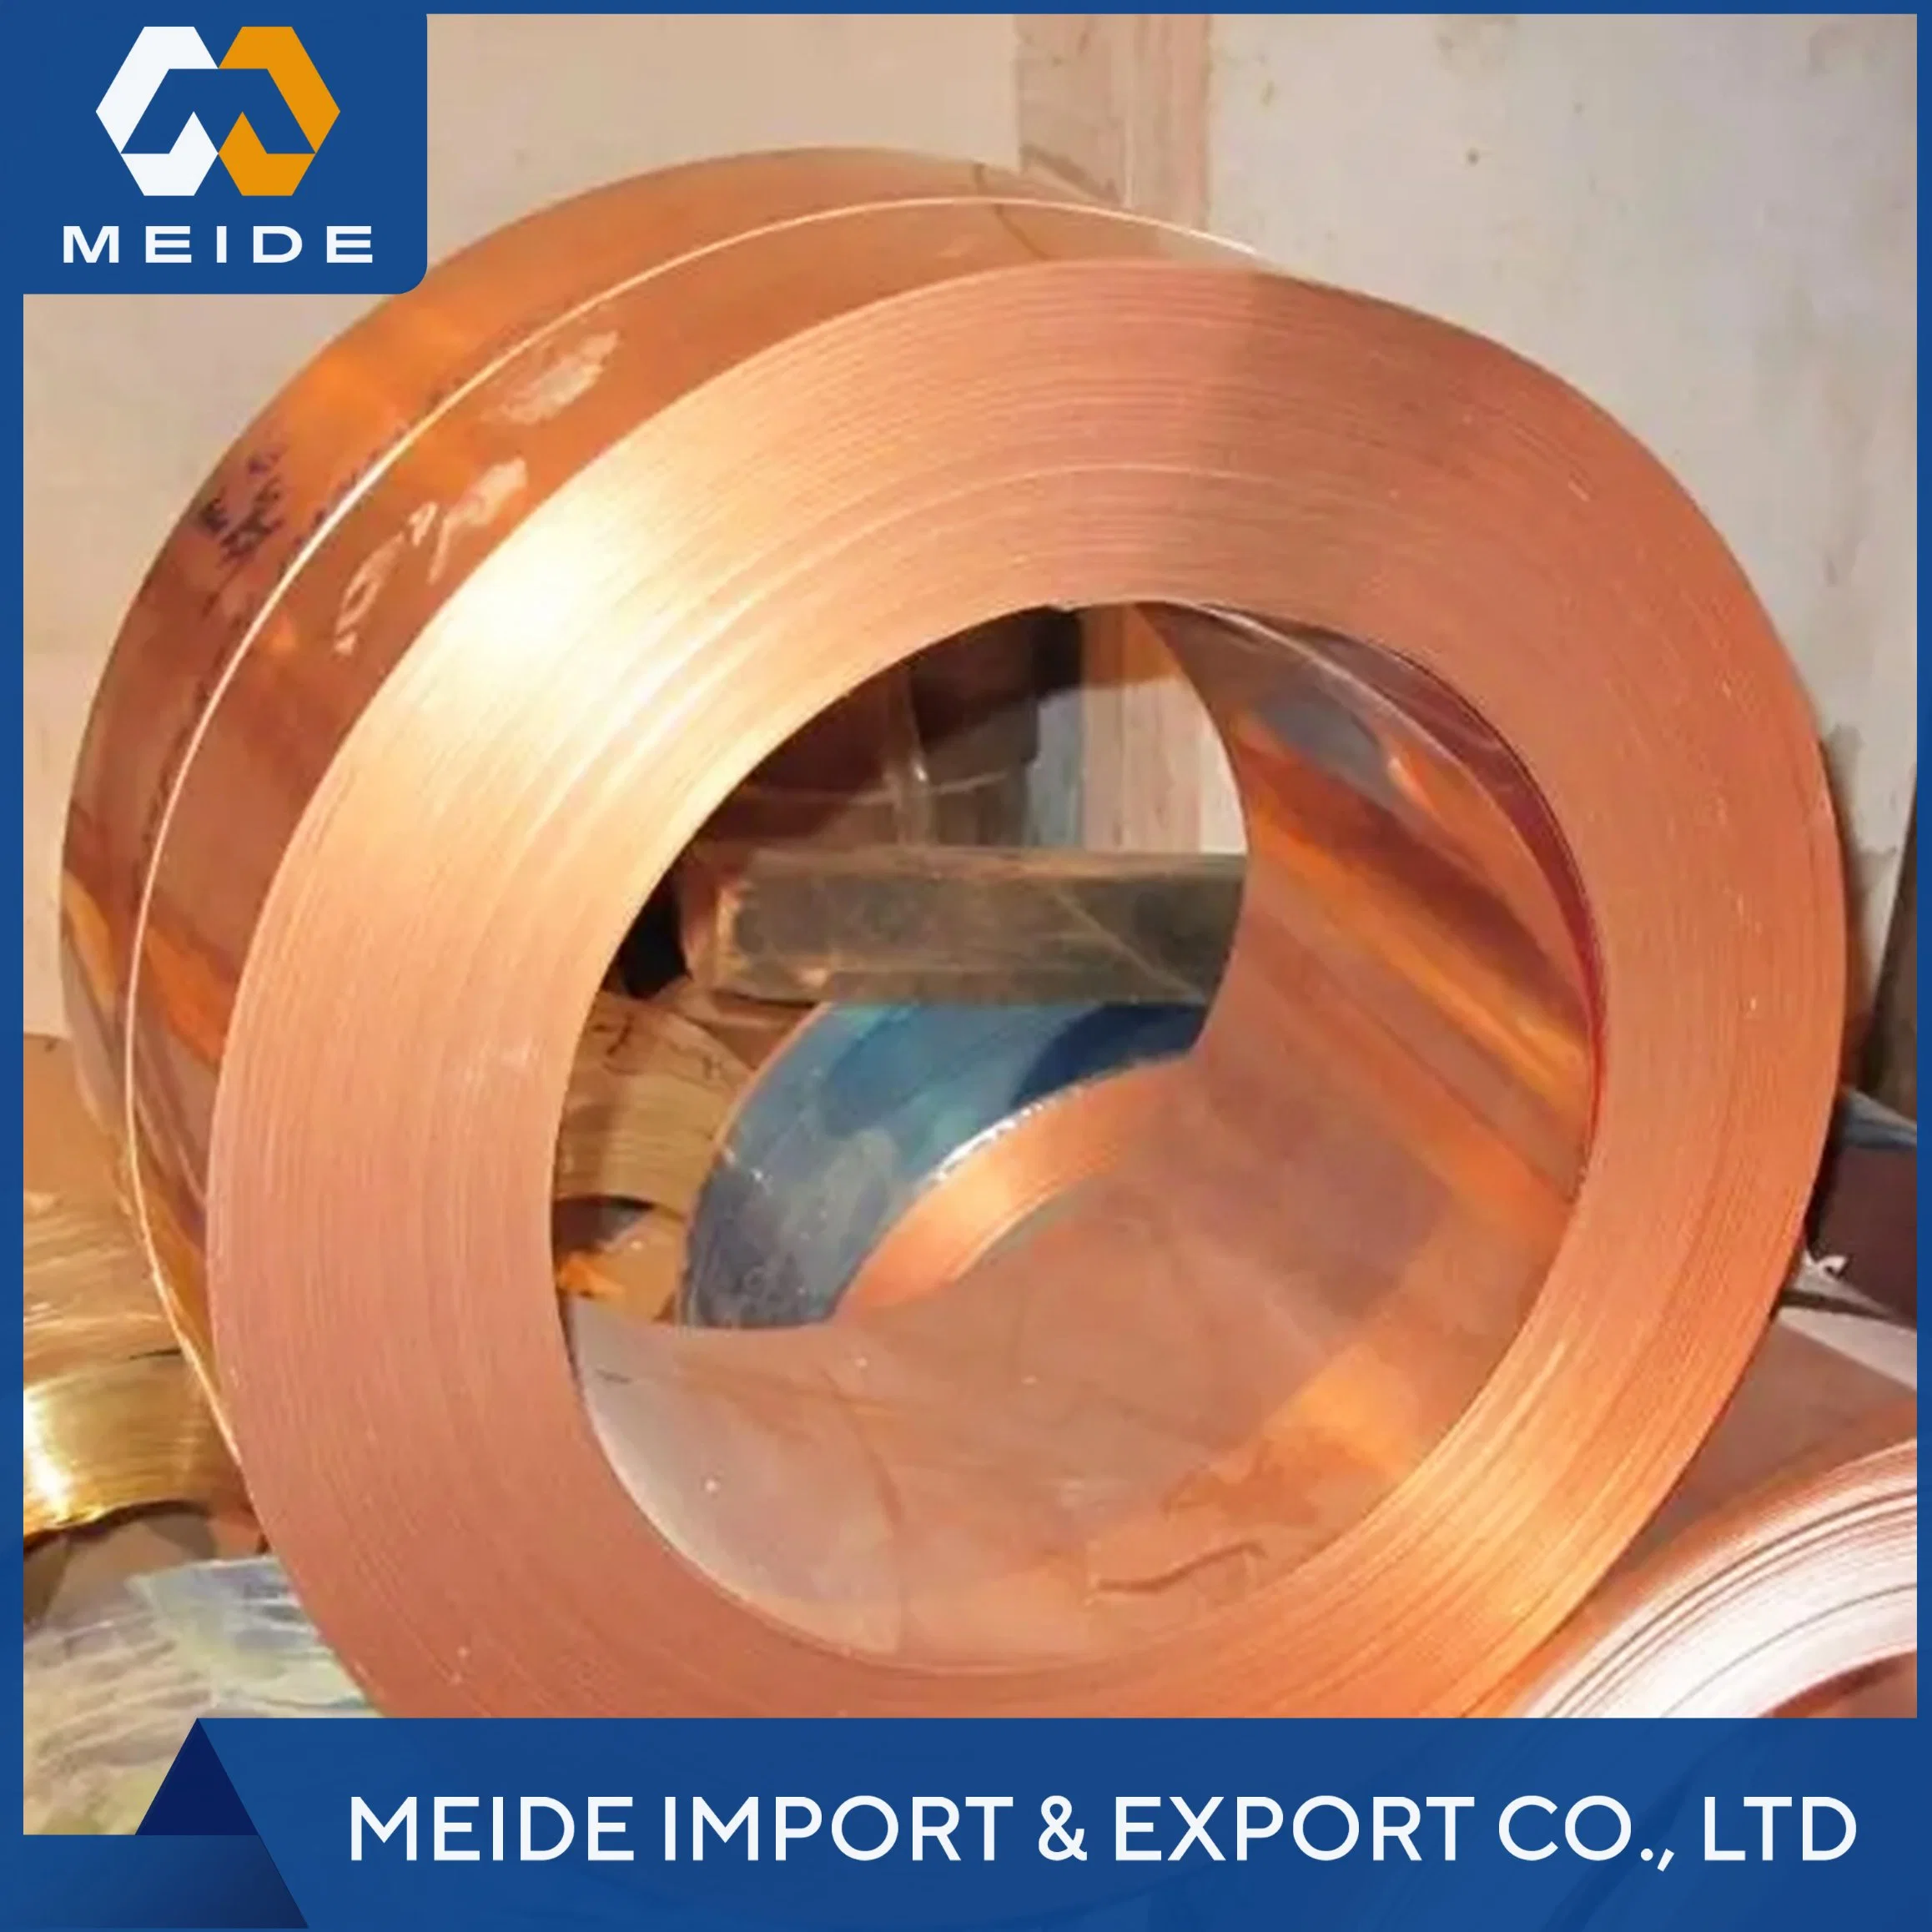 99.9% Pure Copper Strip C67420 C67500 C69300 C68700 C67000 C50100 C5010 C50500 C5050 Bronze Decoration Ground Copper Coil Wire Foil Strip Price